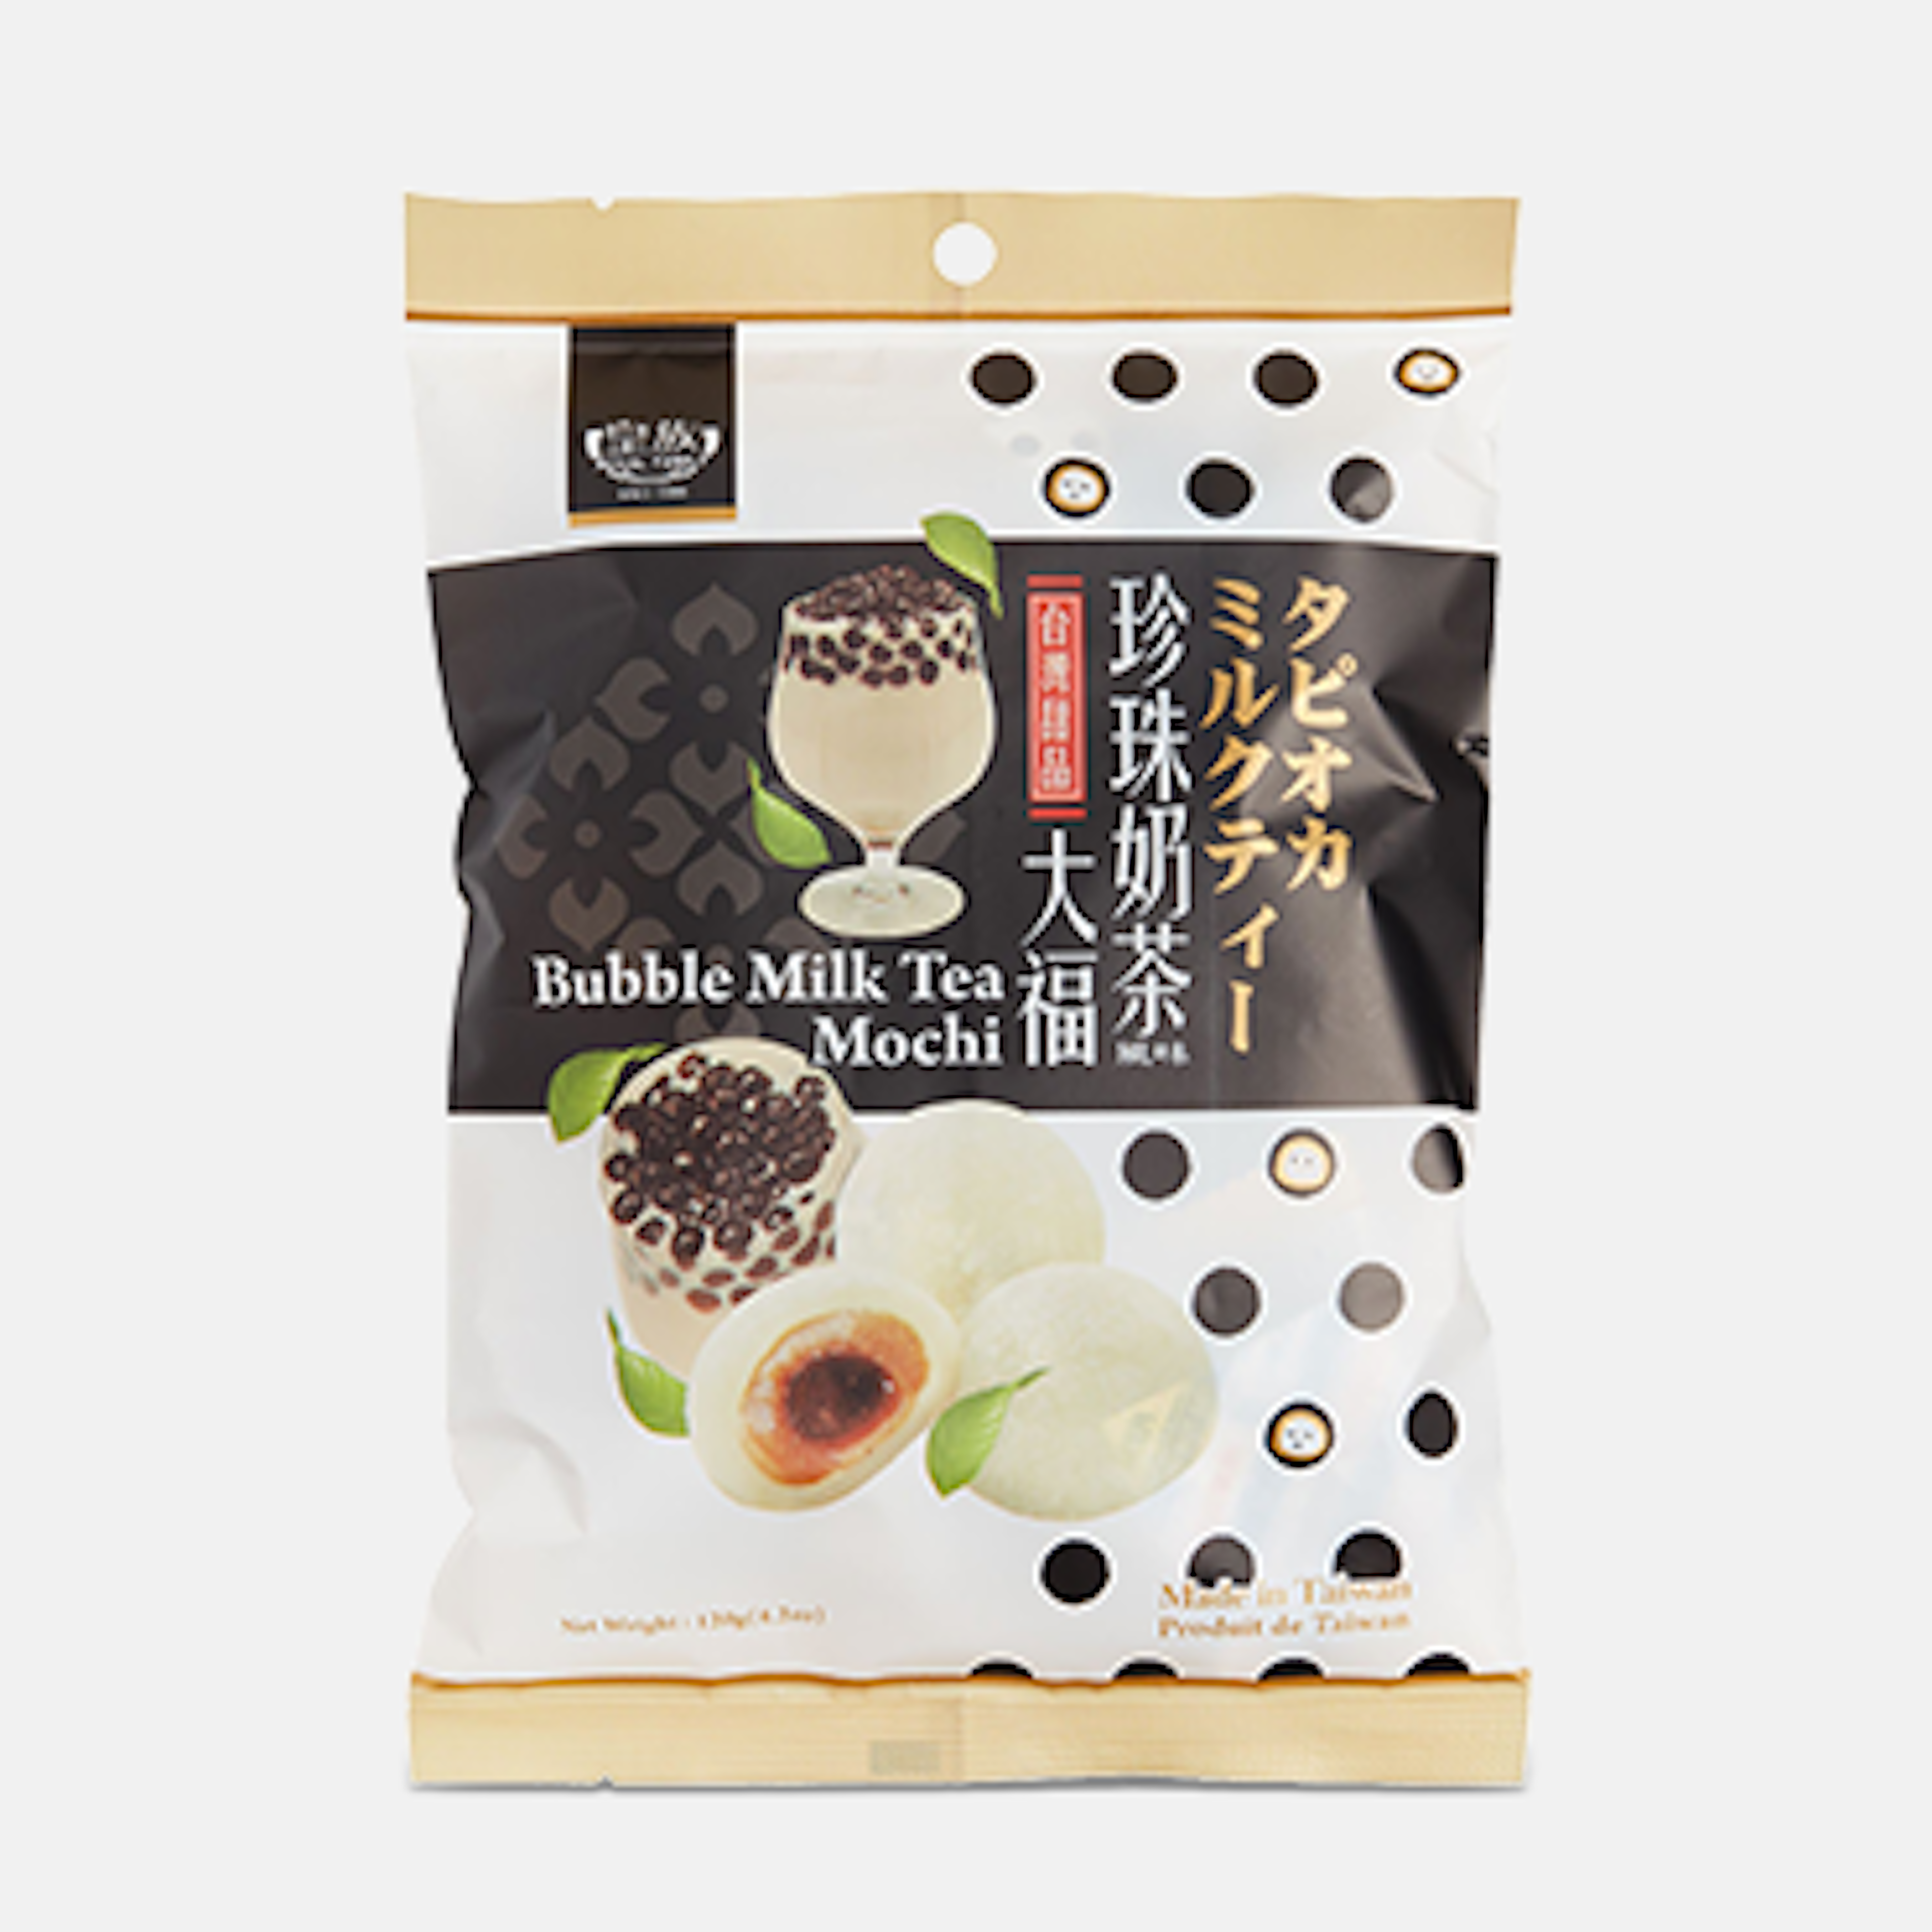 Royal Family Bubble Milk Tea Mochi 120g - Eine kreative Variante des traditionellen japanischen Mochis